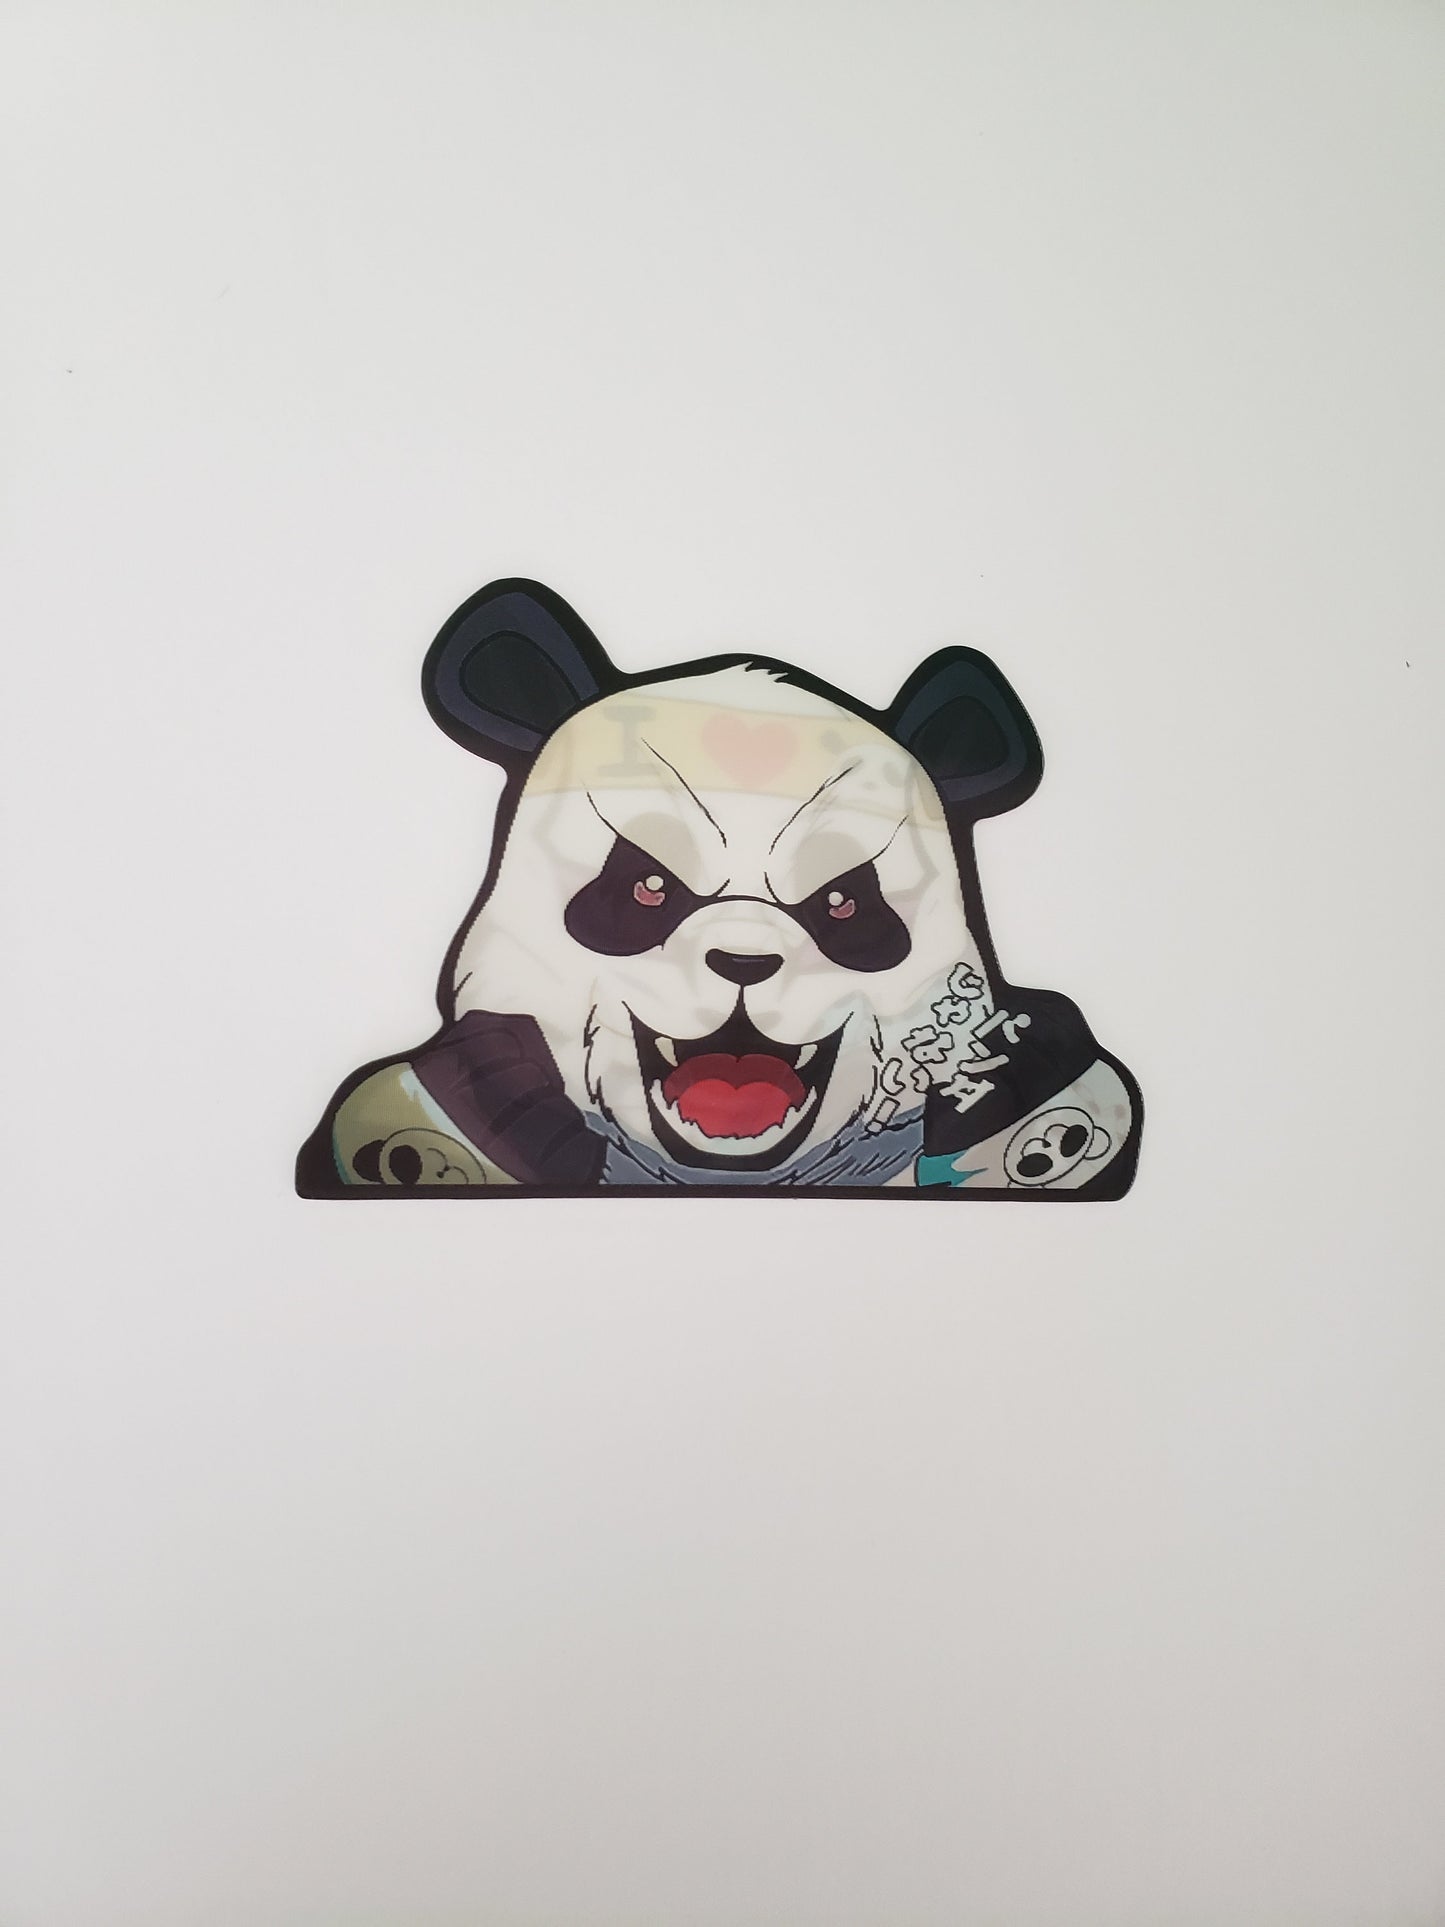 Panda Warrior, Peeker Sticker, 3D Lenticular Car Sticker, Motion Sticker, Anime Sticker, Kawaii Sticker